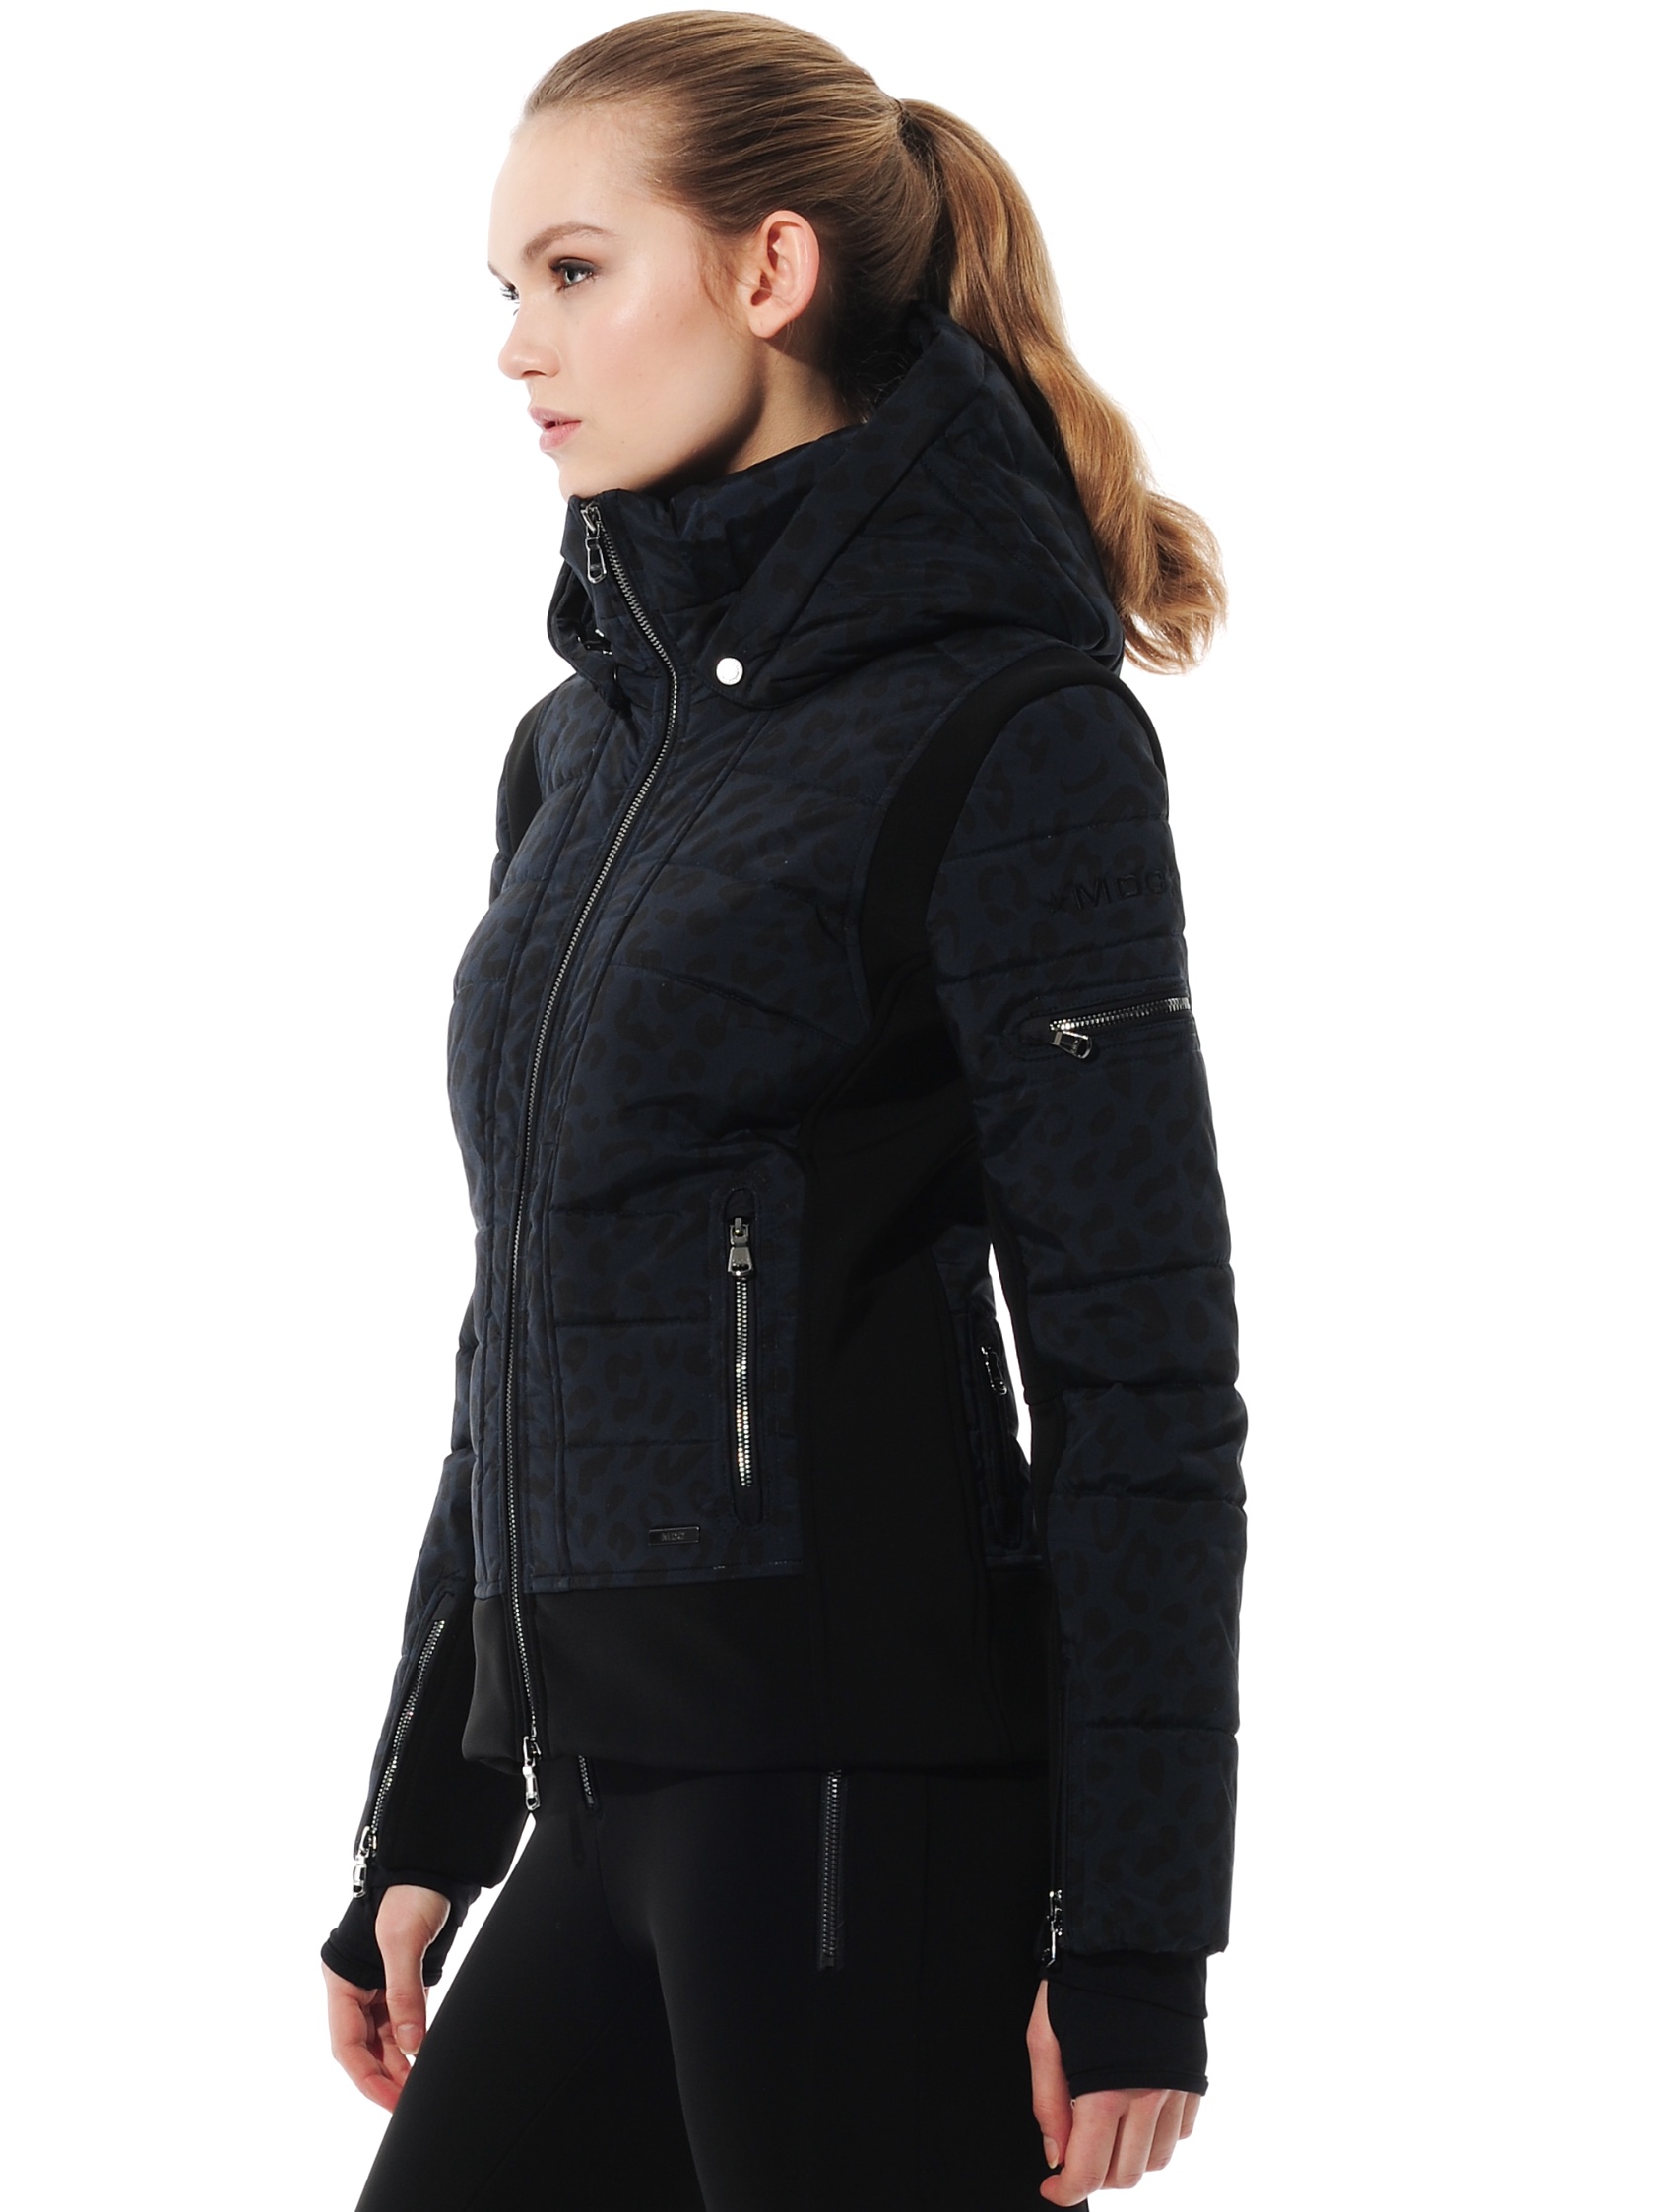 stretch print ski jacket navy/black 